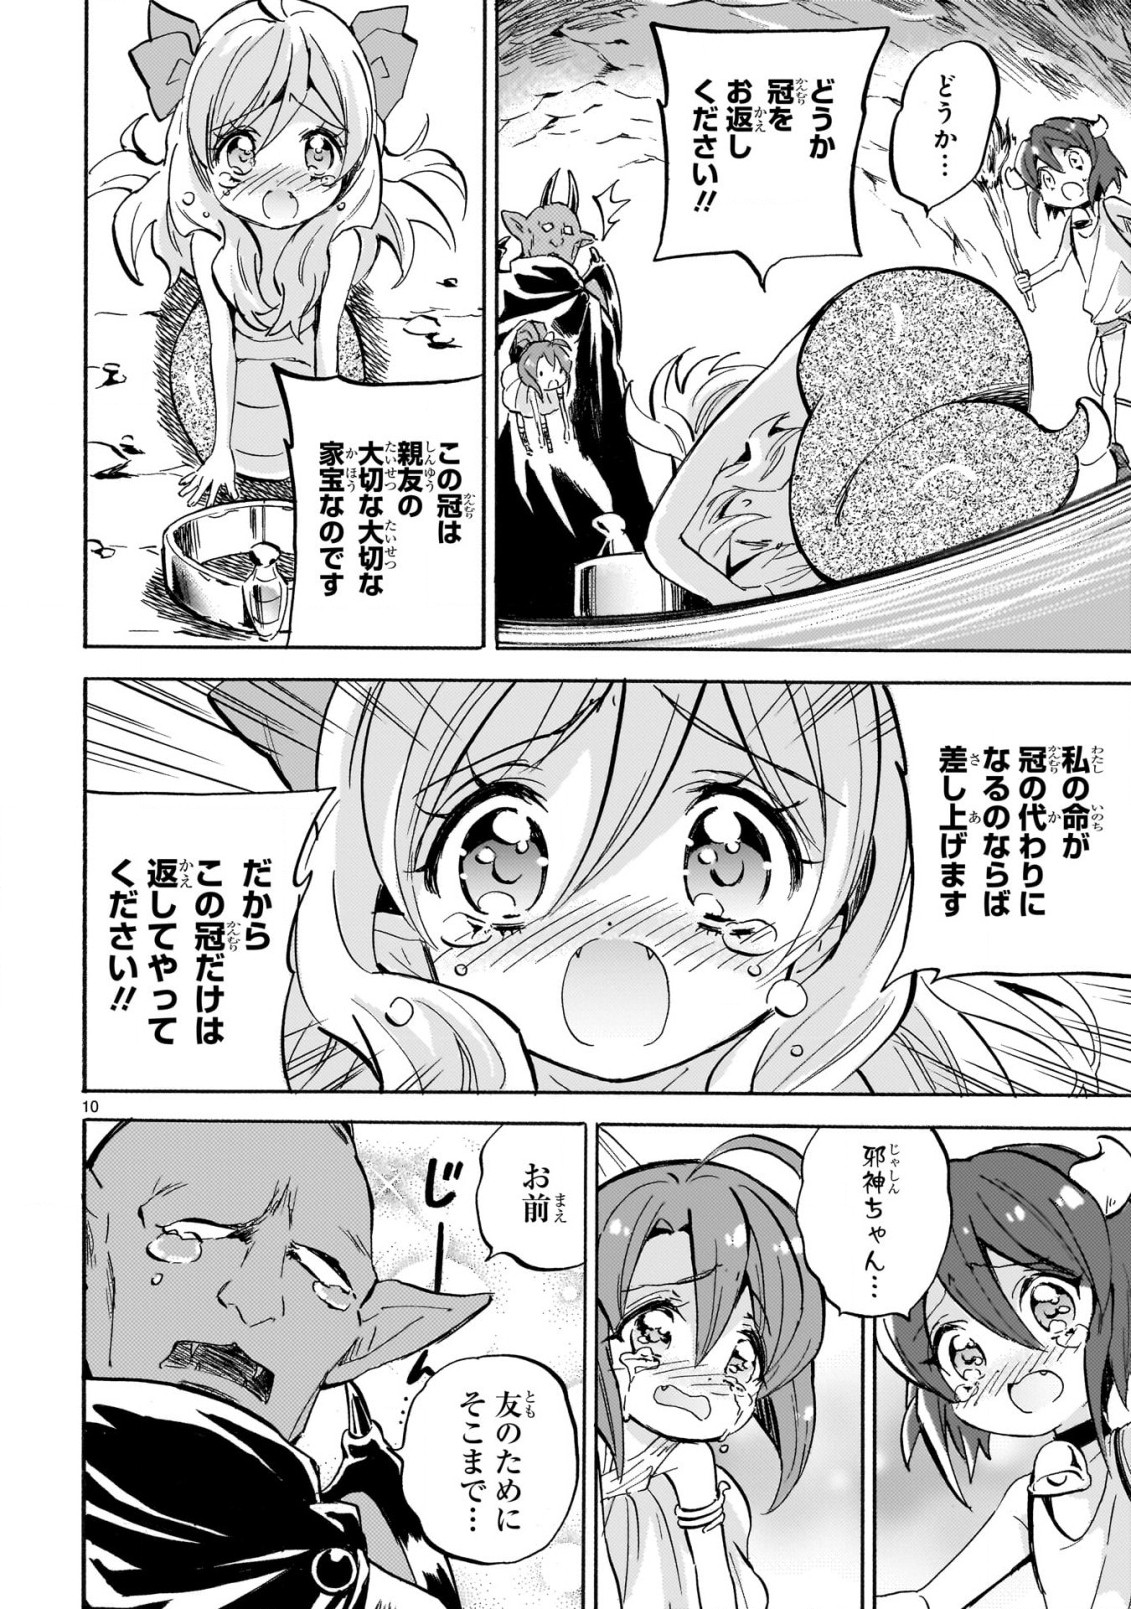 Jashin-chan Dropkick - Chapter 229 - Page 10